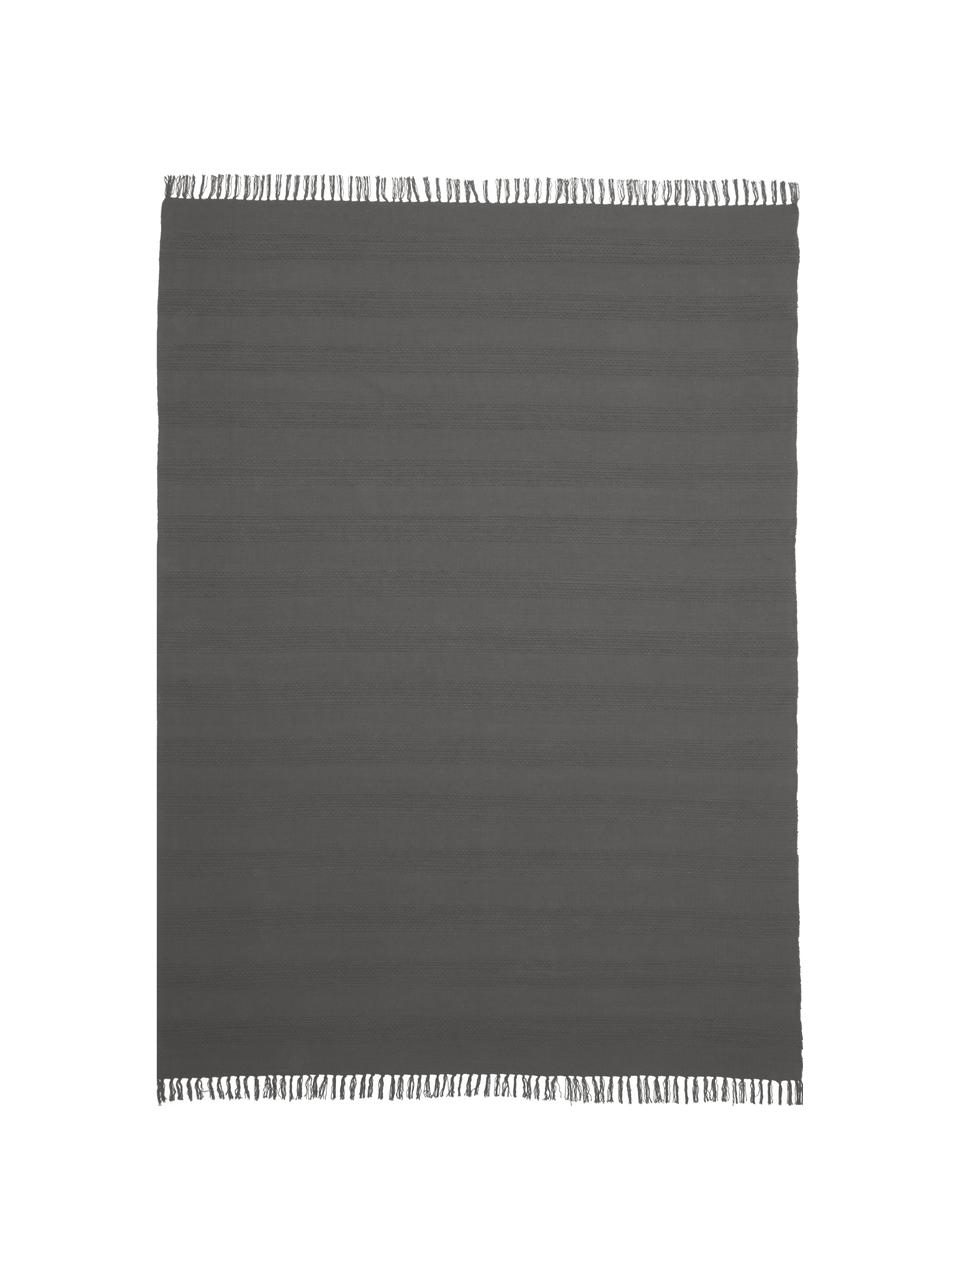 Bavlněný koberec se strukturou tkaných pruhů tón v tónu a třásněmi Tanya, Tmavě šedá